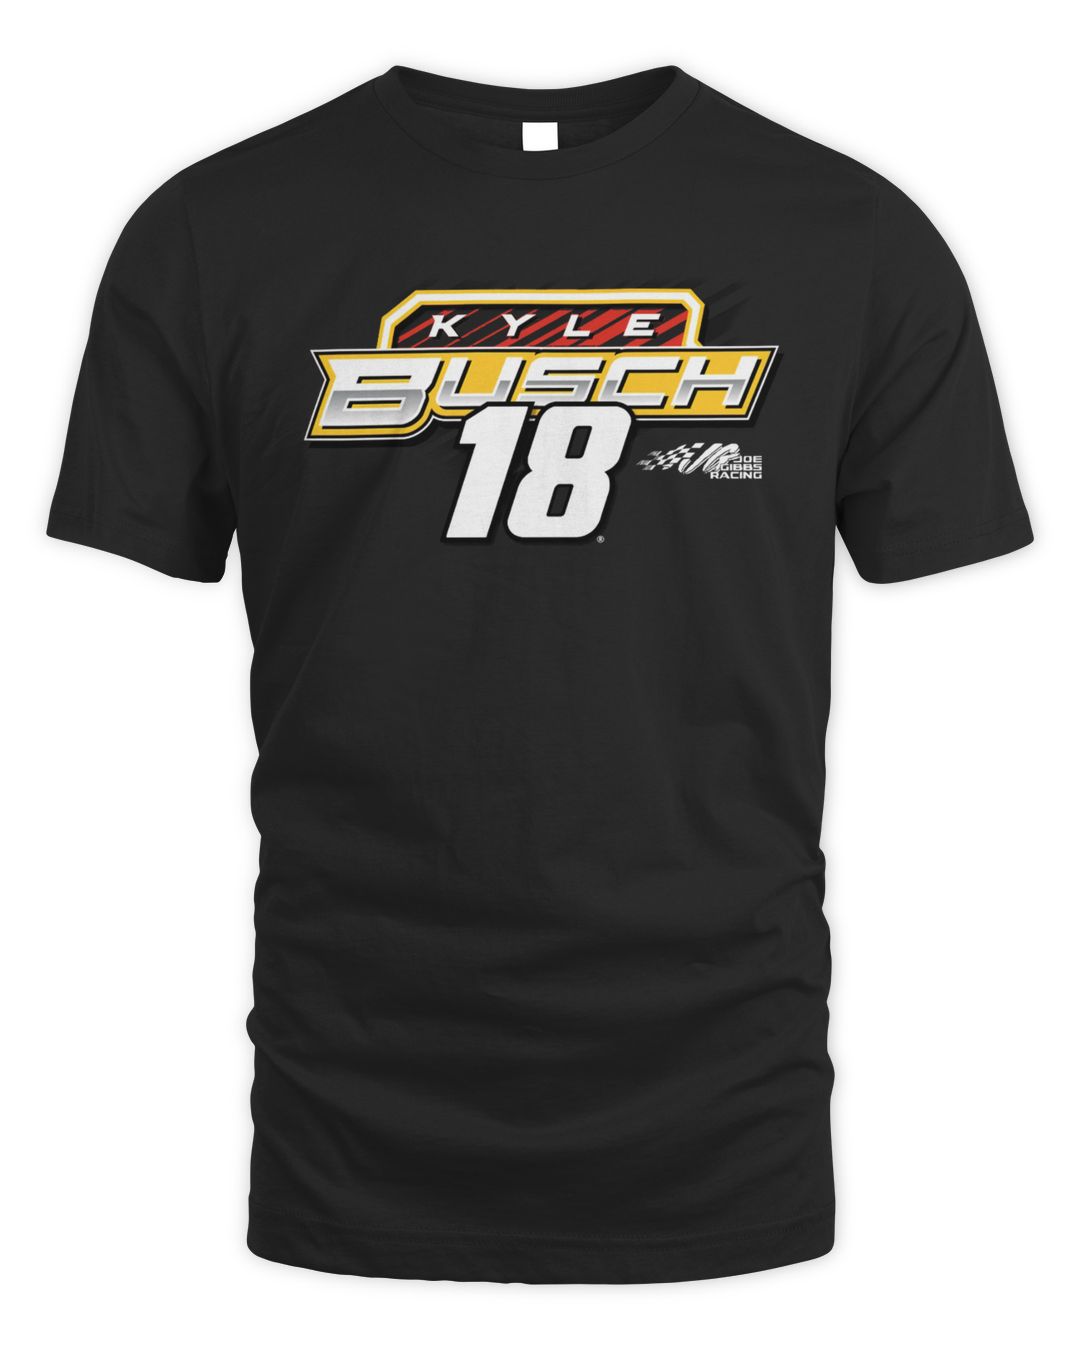 Kyle Busch Joe Gibbs Racing Team Collection M&M’s Horsepower Shirt